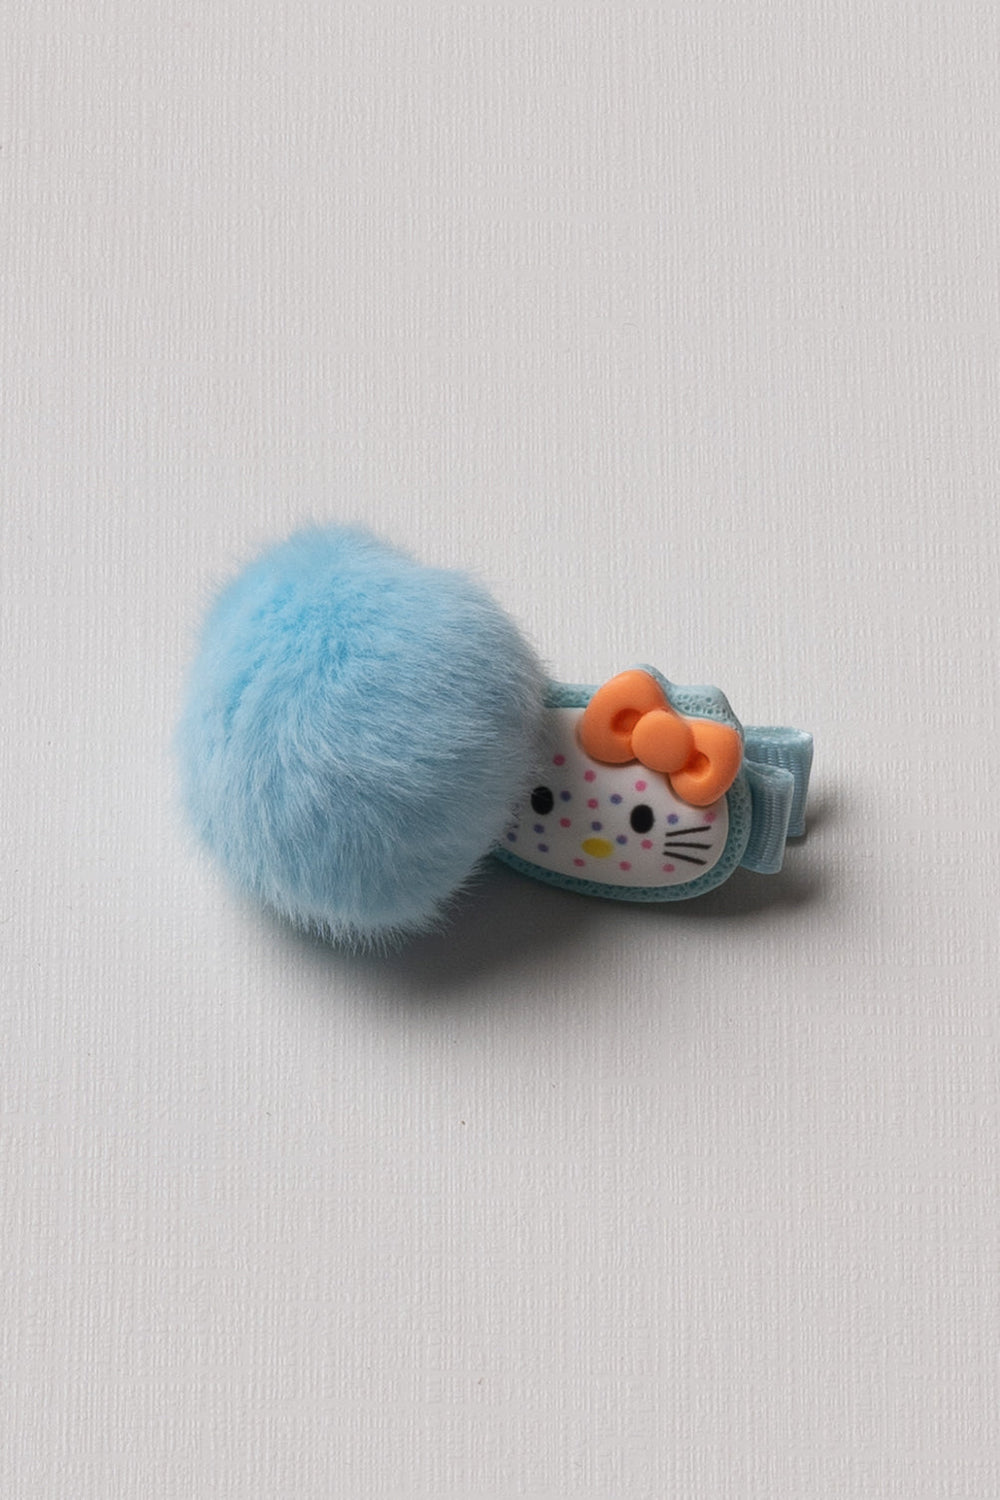 The Nesavu Hair Clip Adorable Kitty Pom-Pom Hair Clip for Kids Nesavu Blue JHCL74C Cute Kitty Pom-Pom Hair Clip for Kids | Gentle & Fun Hair Accessory | The Nesavu